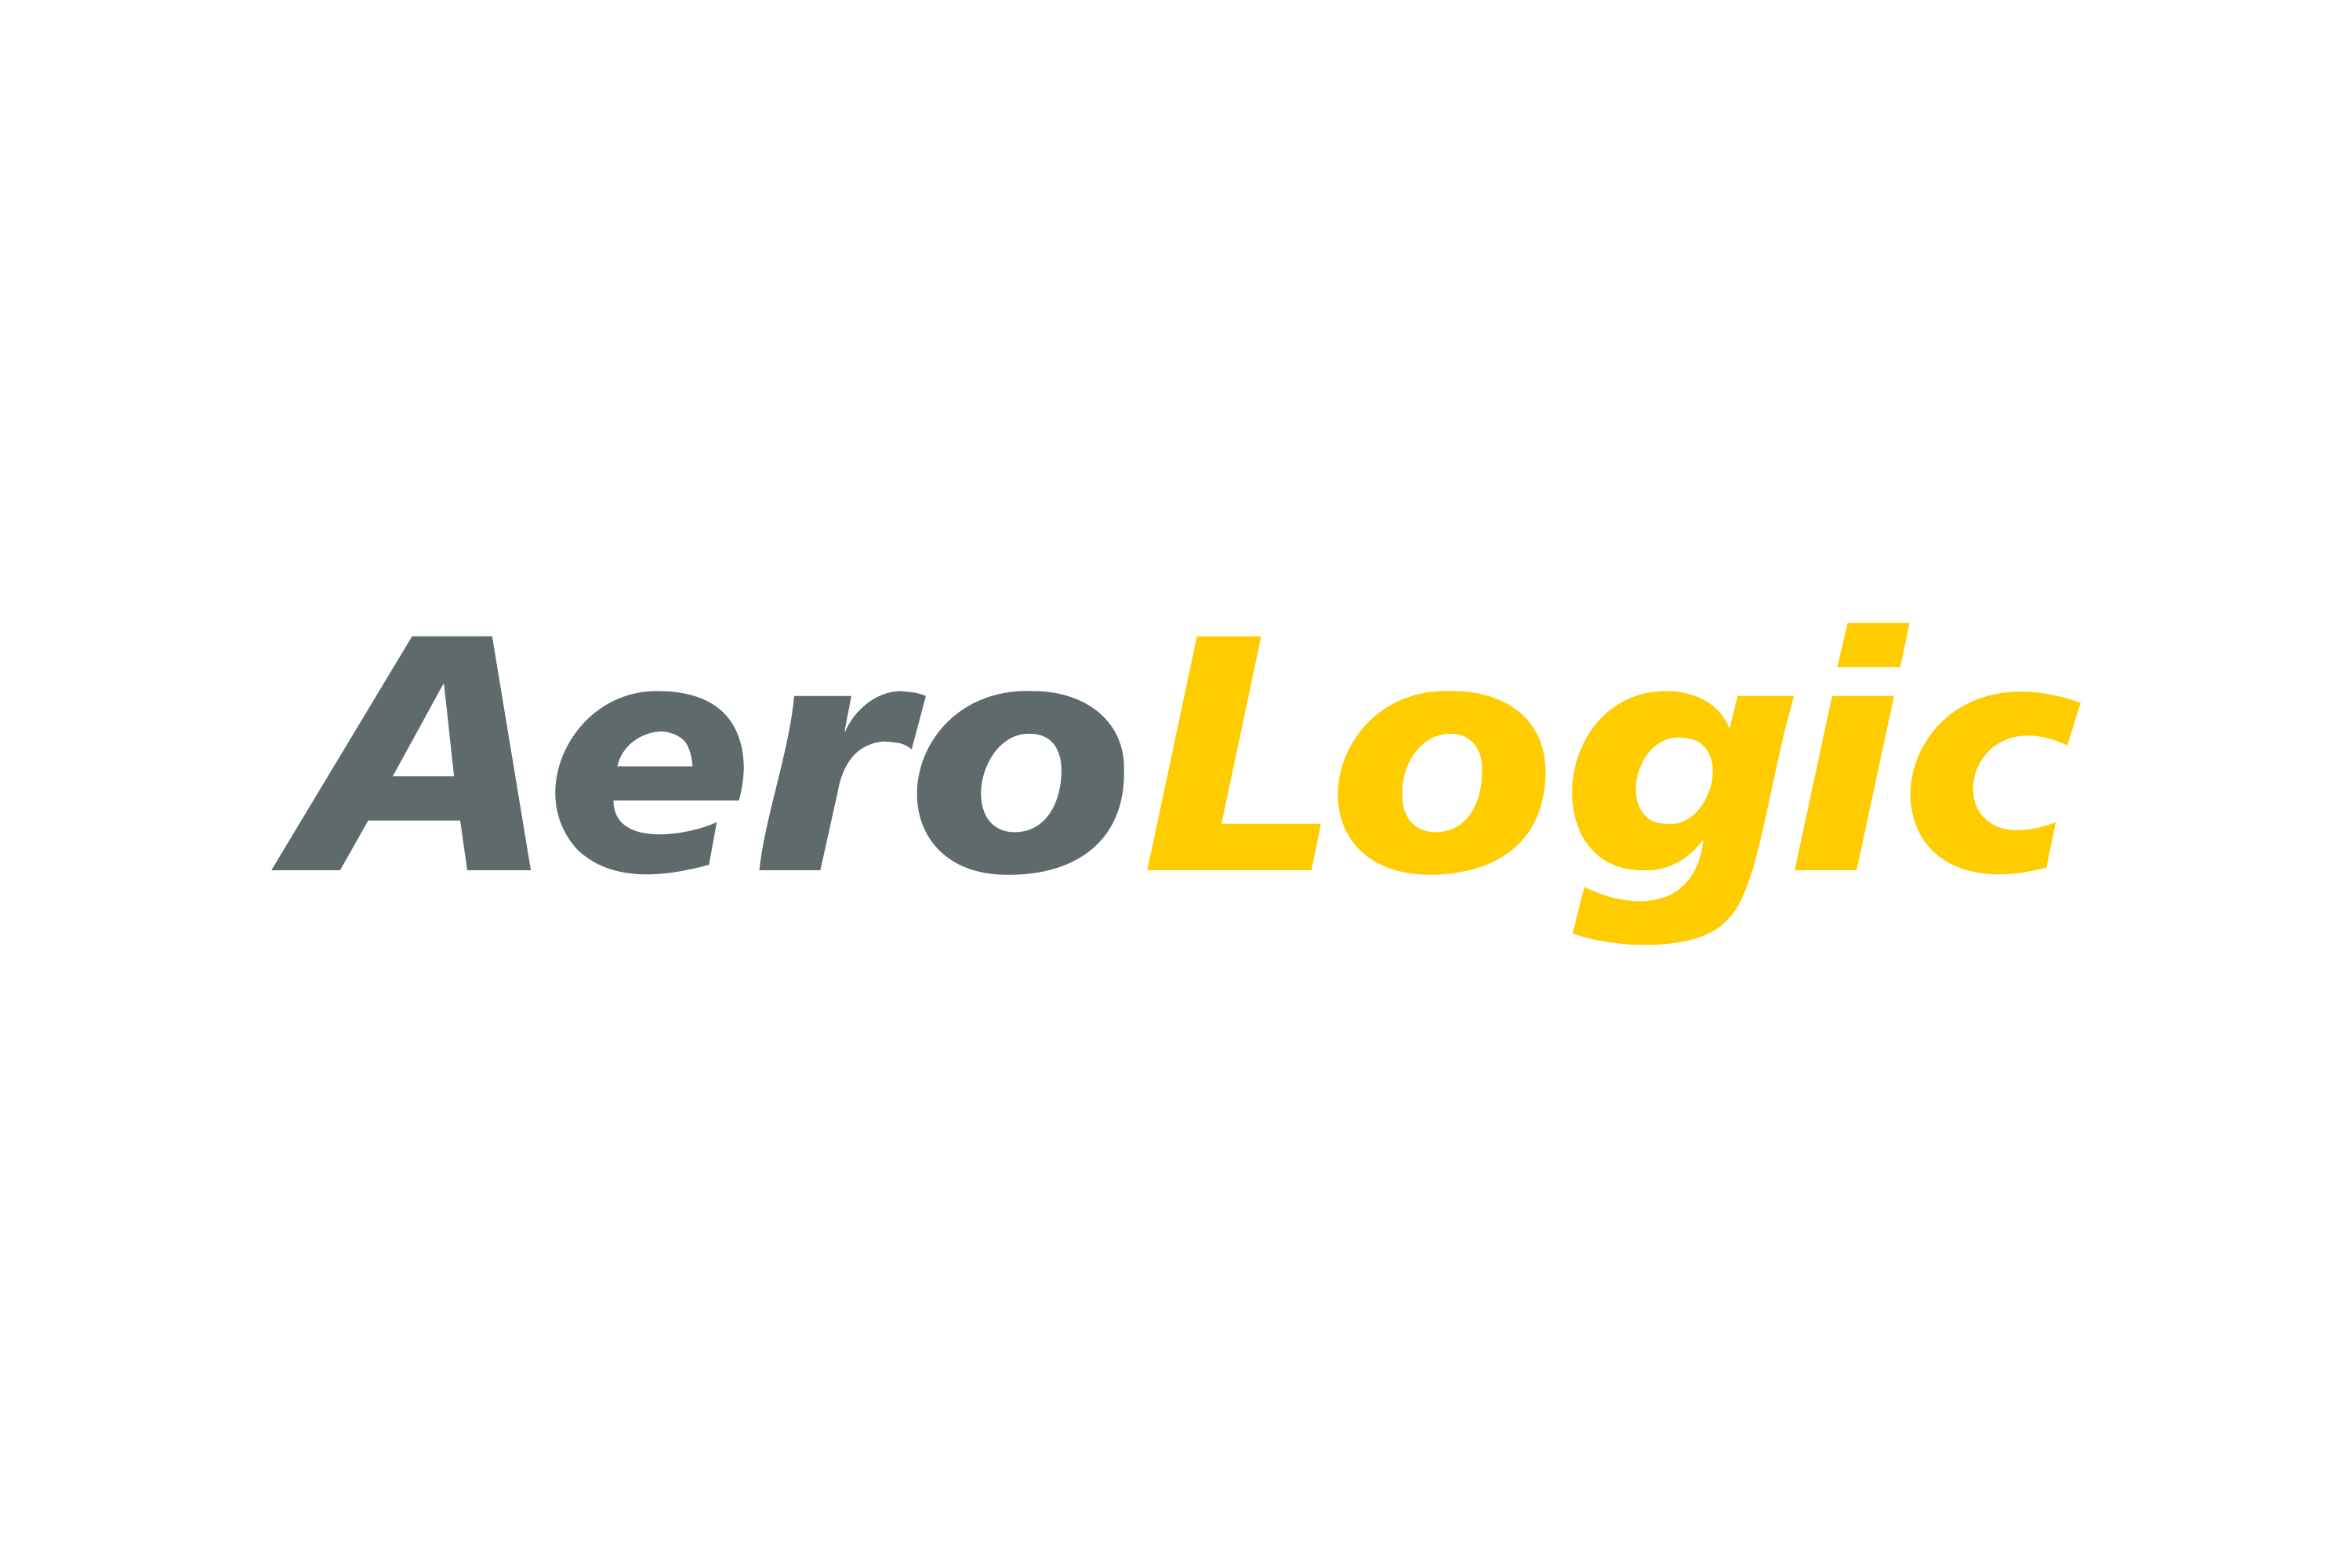 Download AeroLogic Logo in SVG Vector or PNG File Format - Logo.wine